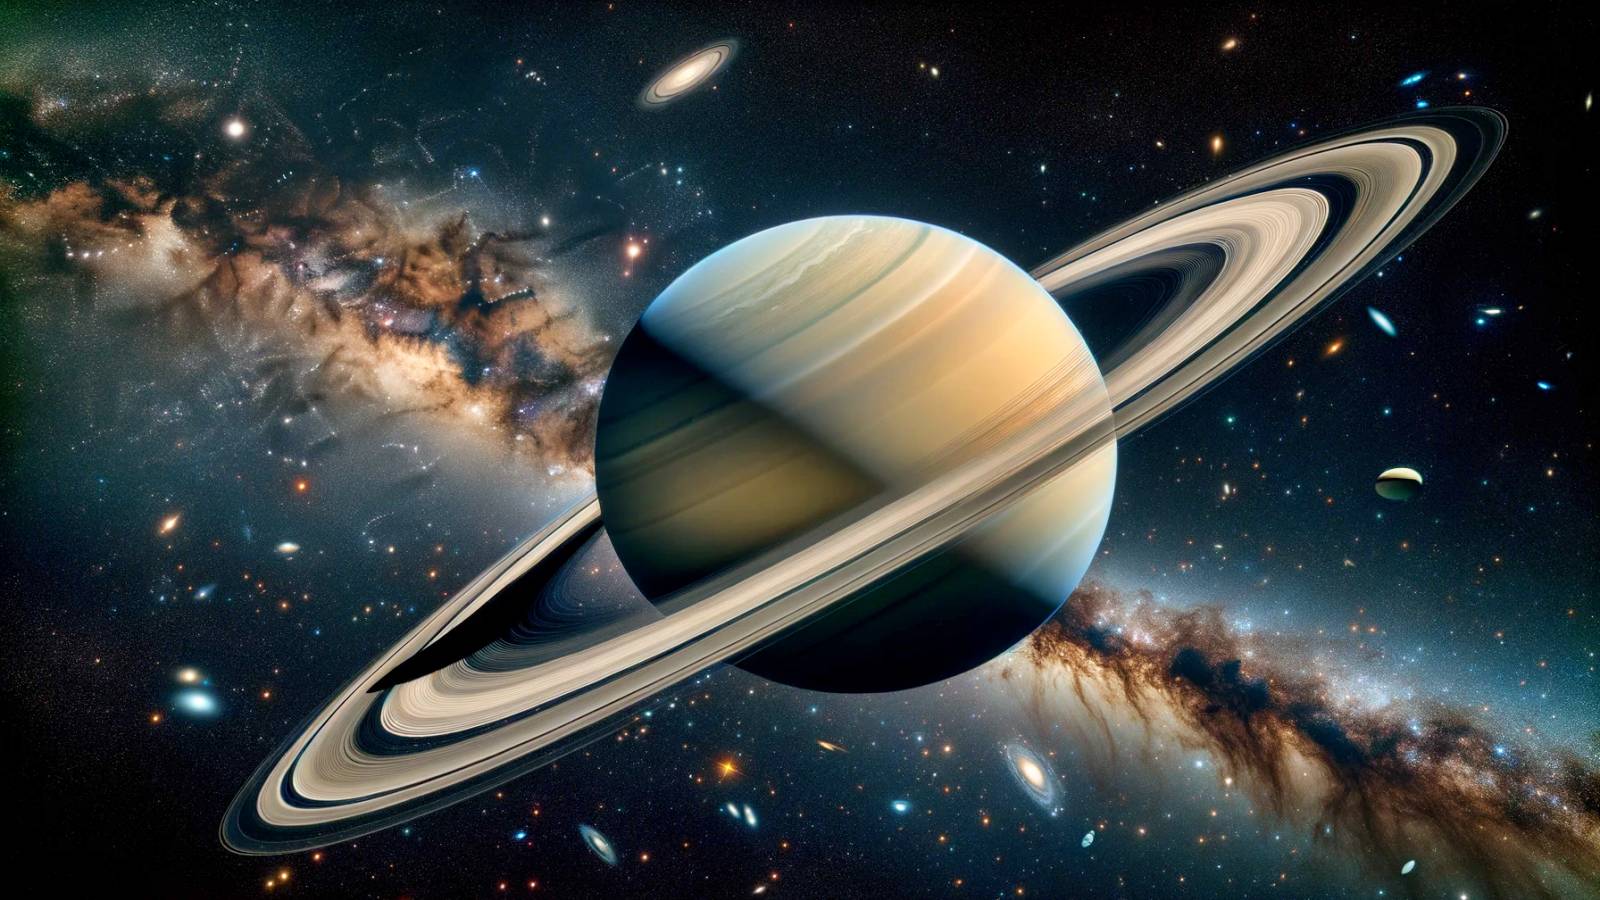 Planeetta Saturnus NASA ilmoittaa hämmästyttävästä löydöstä Hubble-renkaiden palaset